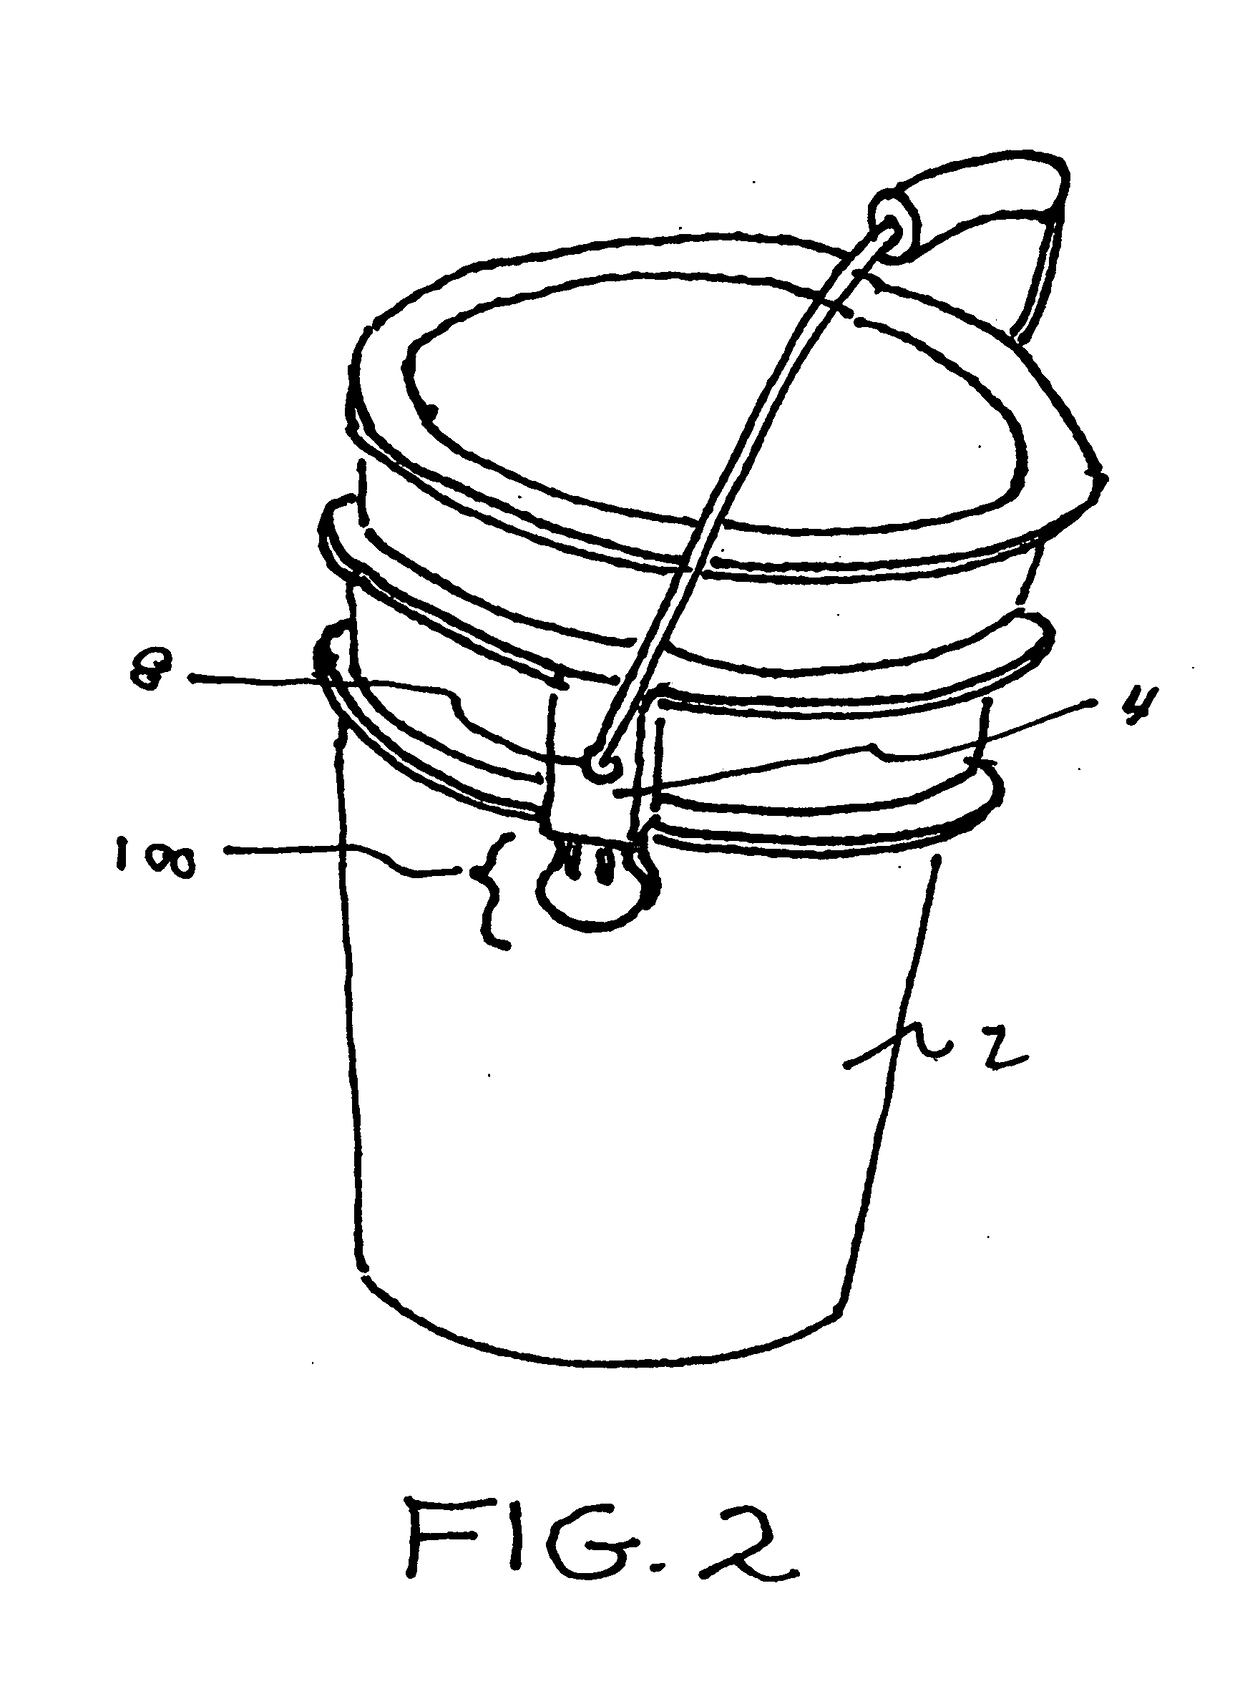 Bucket handle retainer